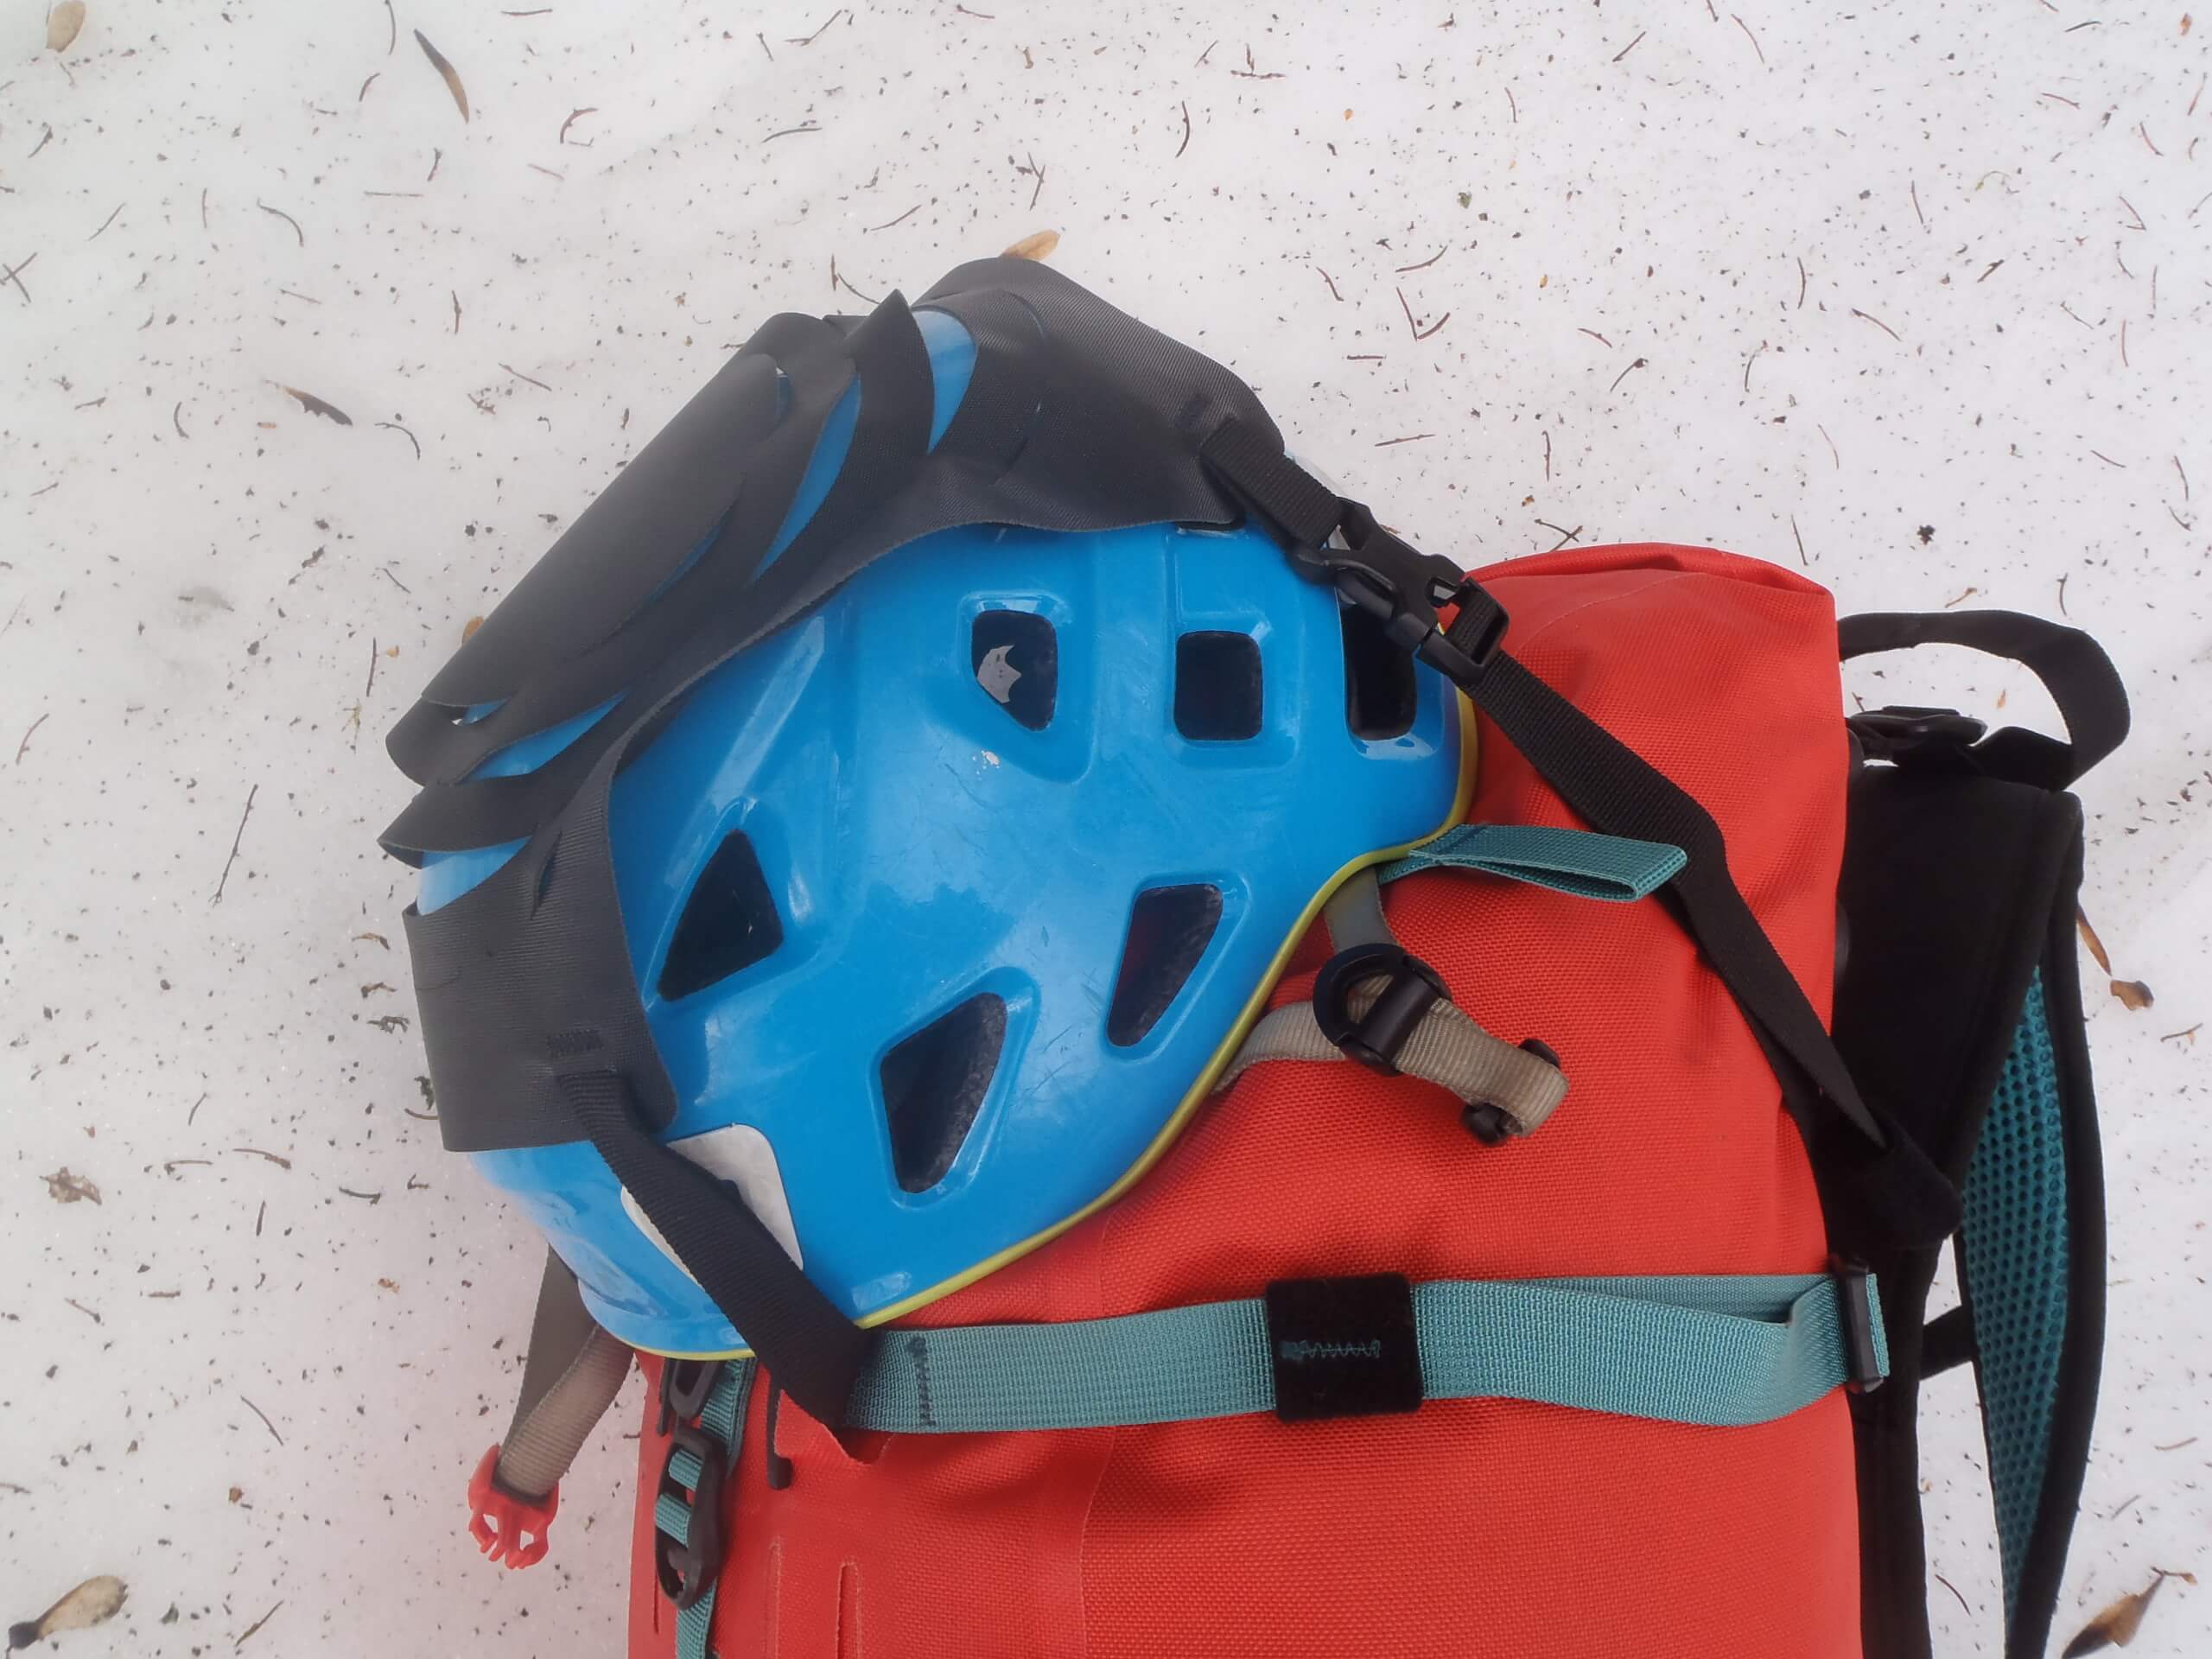 Fixace horolezecké helmy na batoh Ortlieb Atrack.